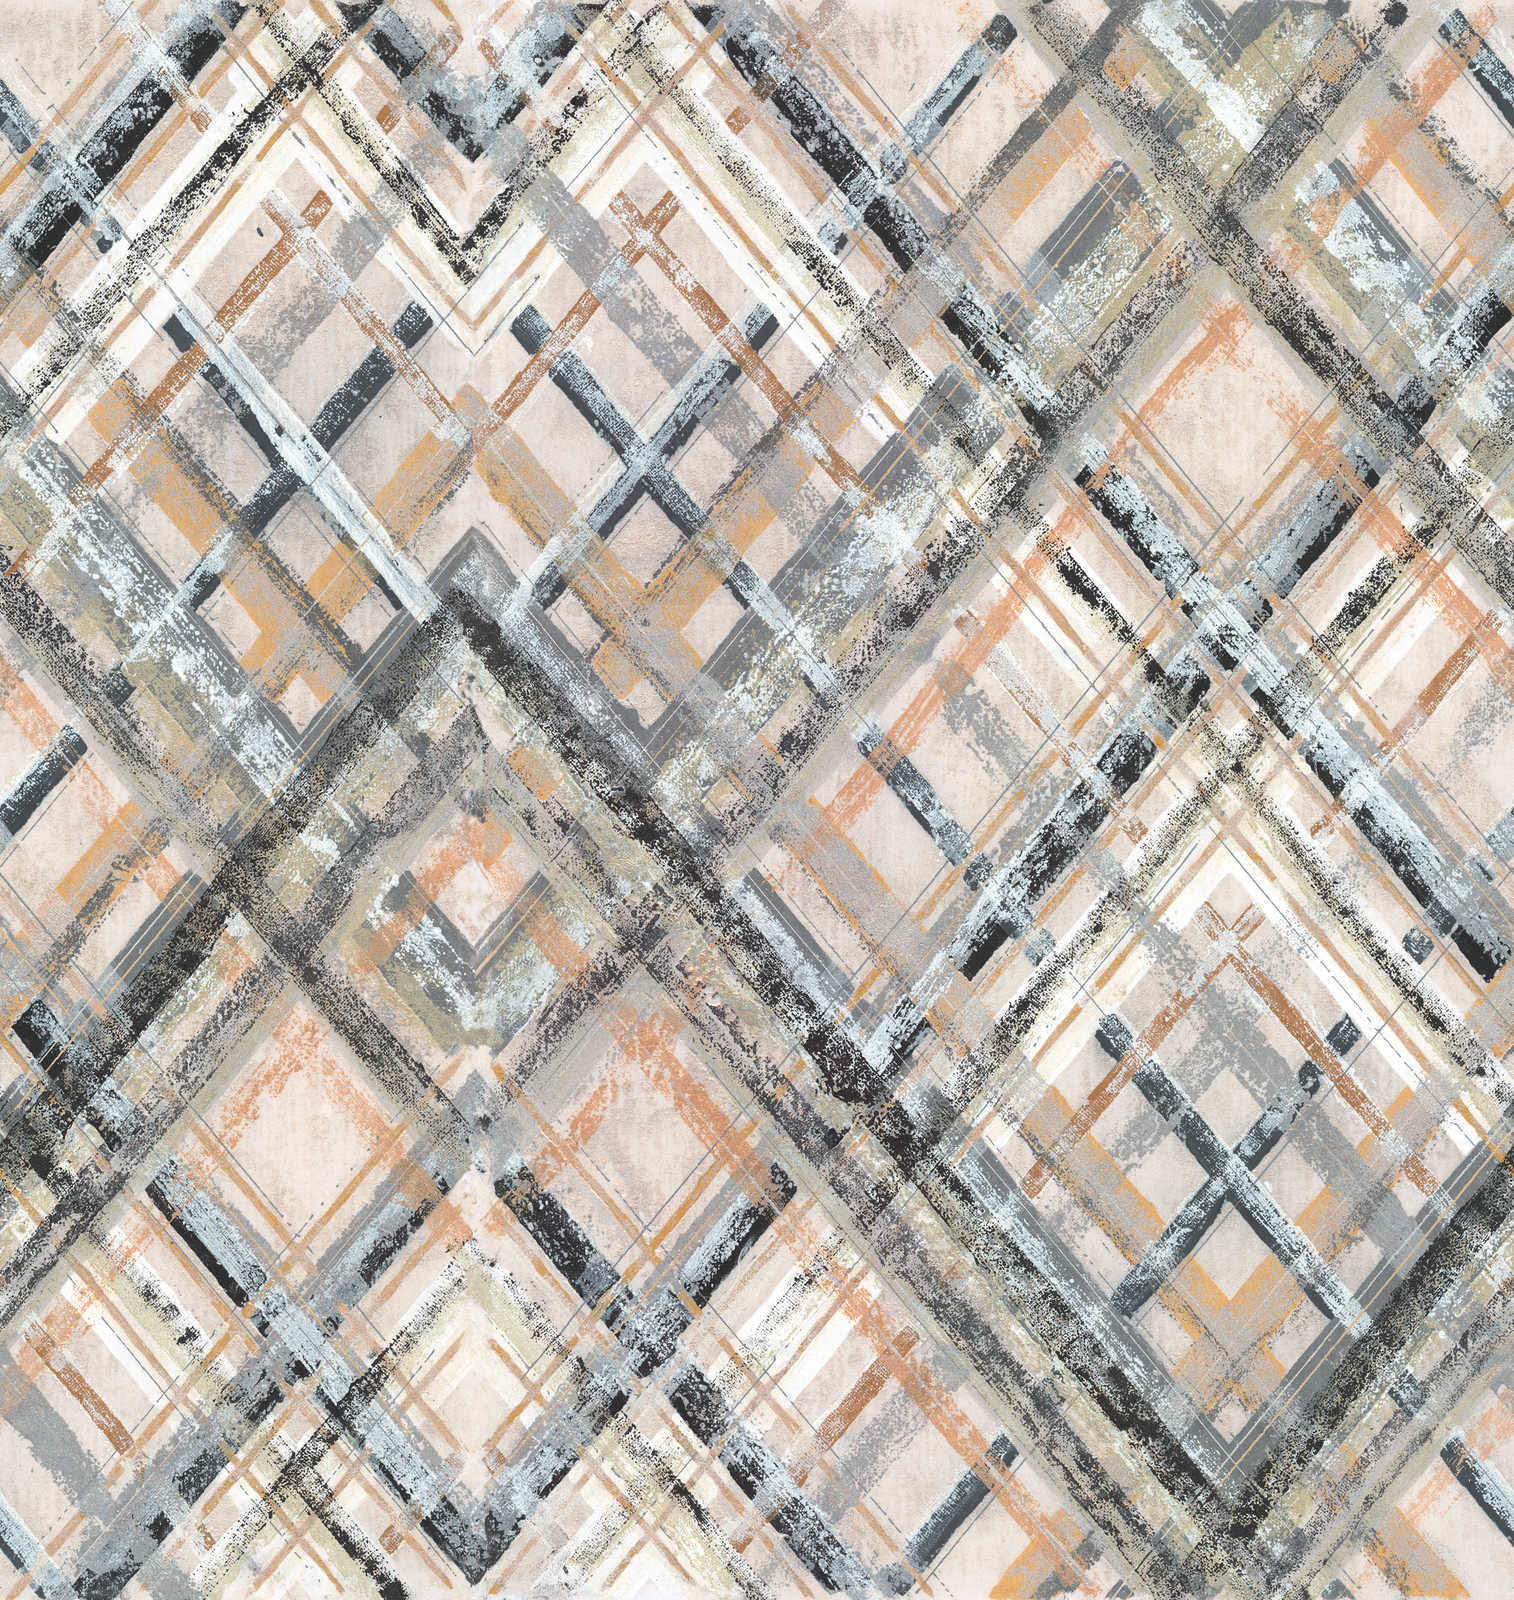             Papel pintado tejido-no tejido abstracto con motivo geométrico - gris, beige, azul-gris
        